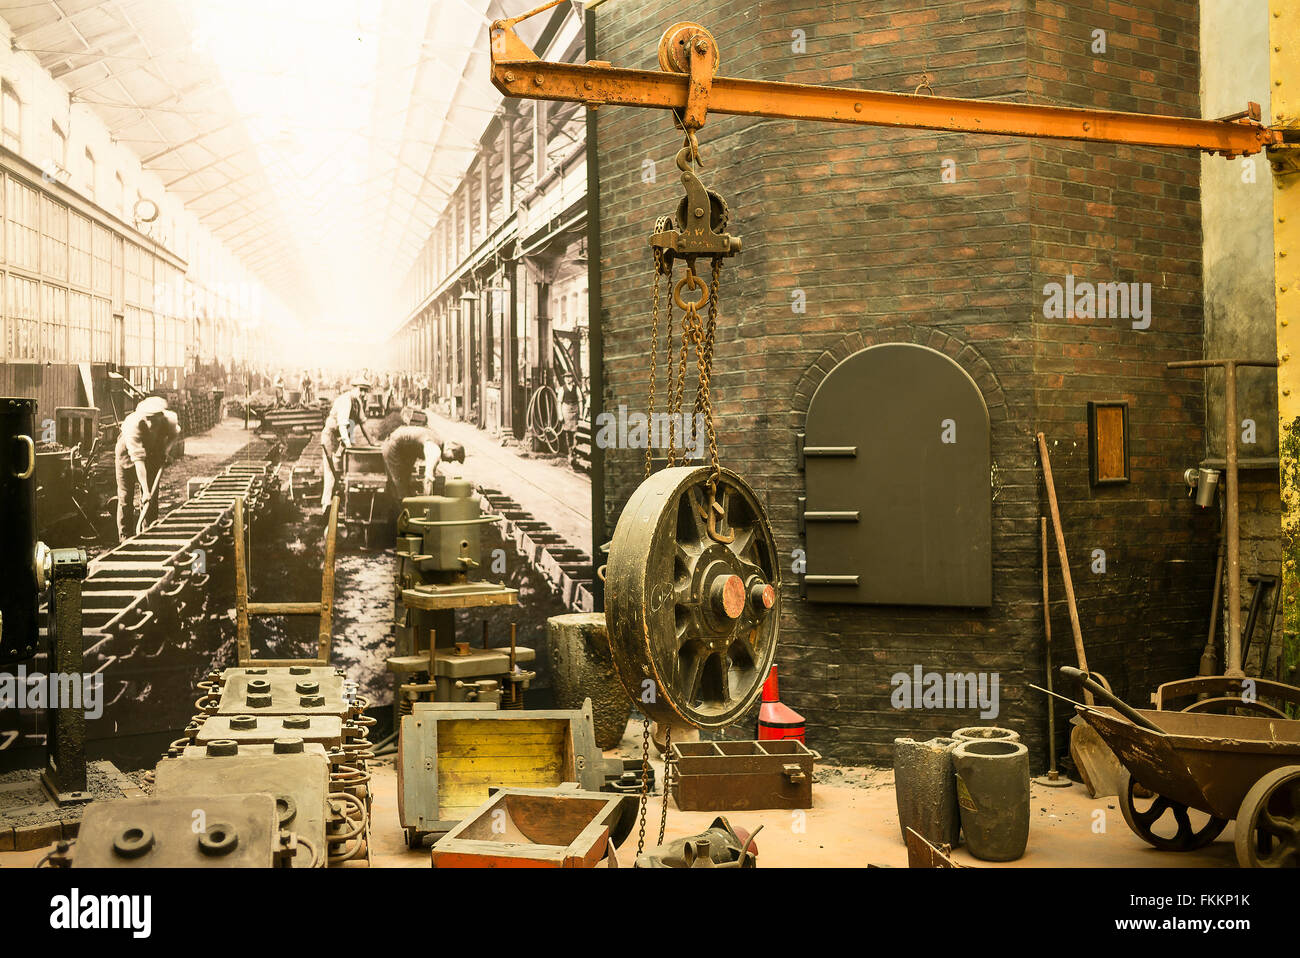 Diarama industriale in STEAM museum in Swindon Regno Unito mostra storica di forgiatura railway engineering prodotti Foto Stock